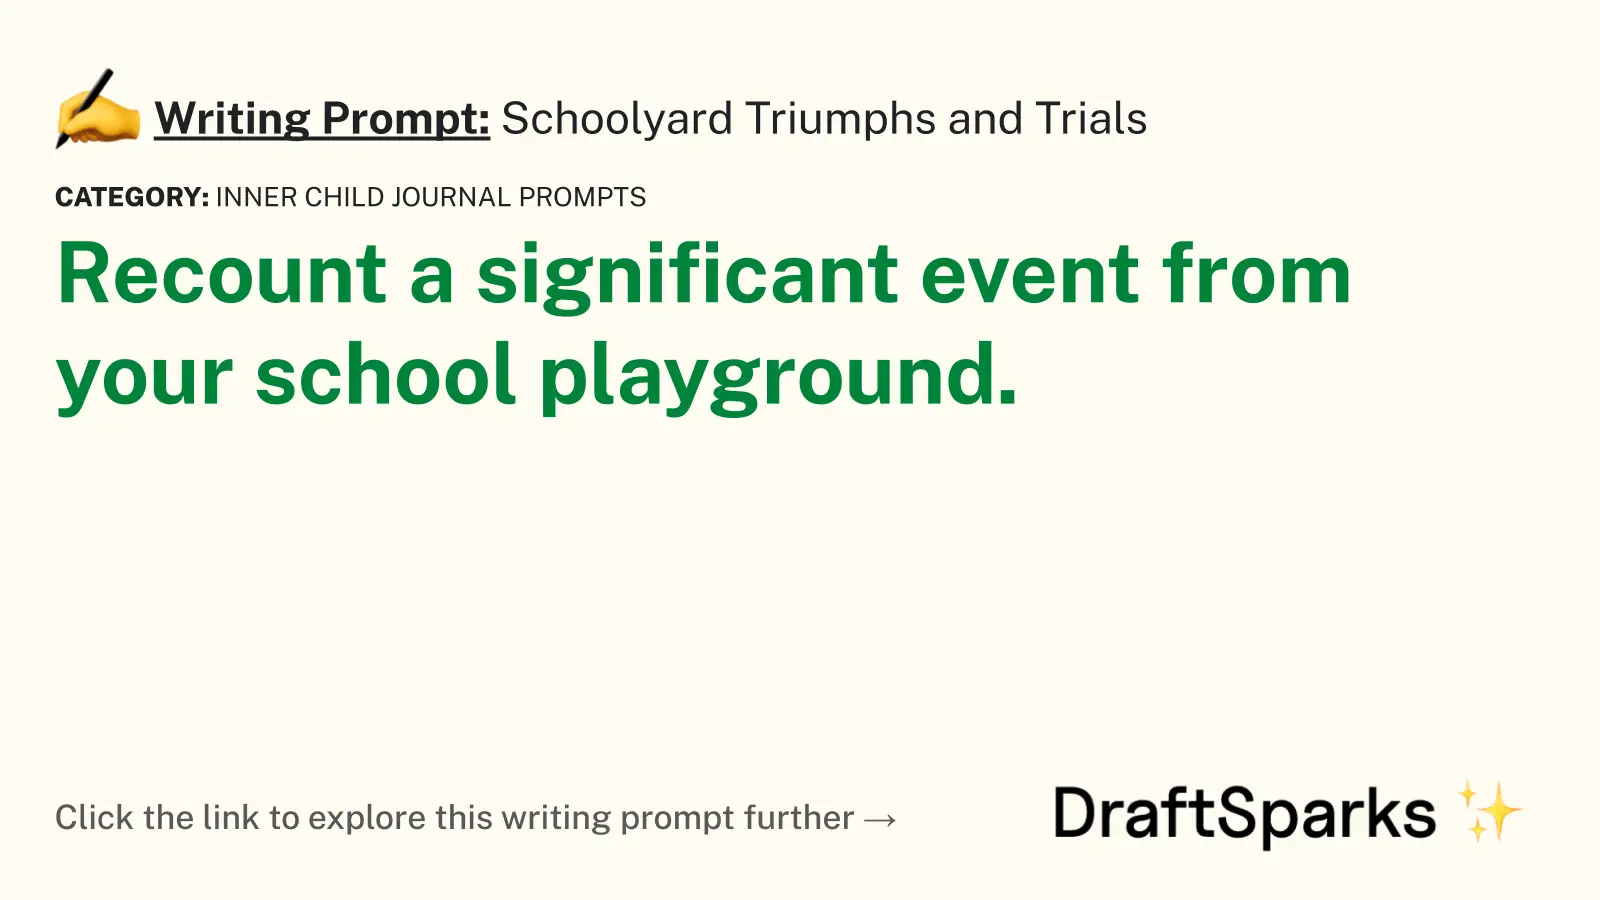 Schoolyard Triumphs and Trials